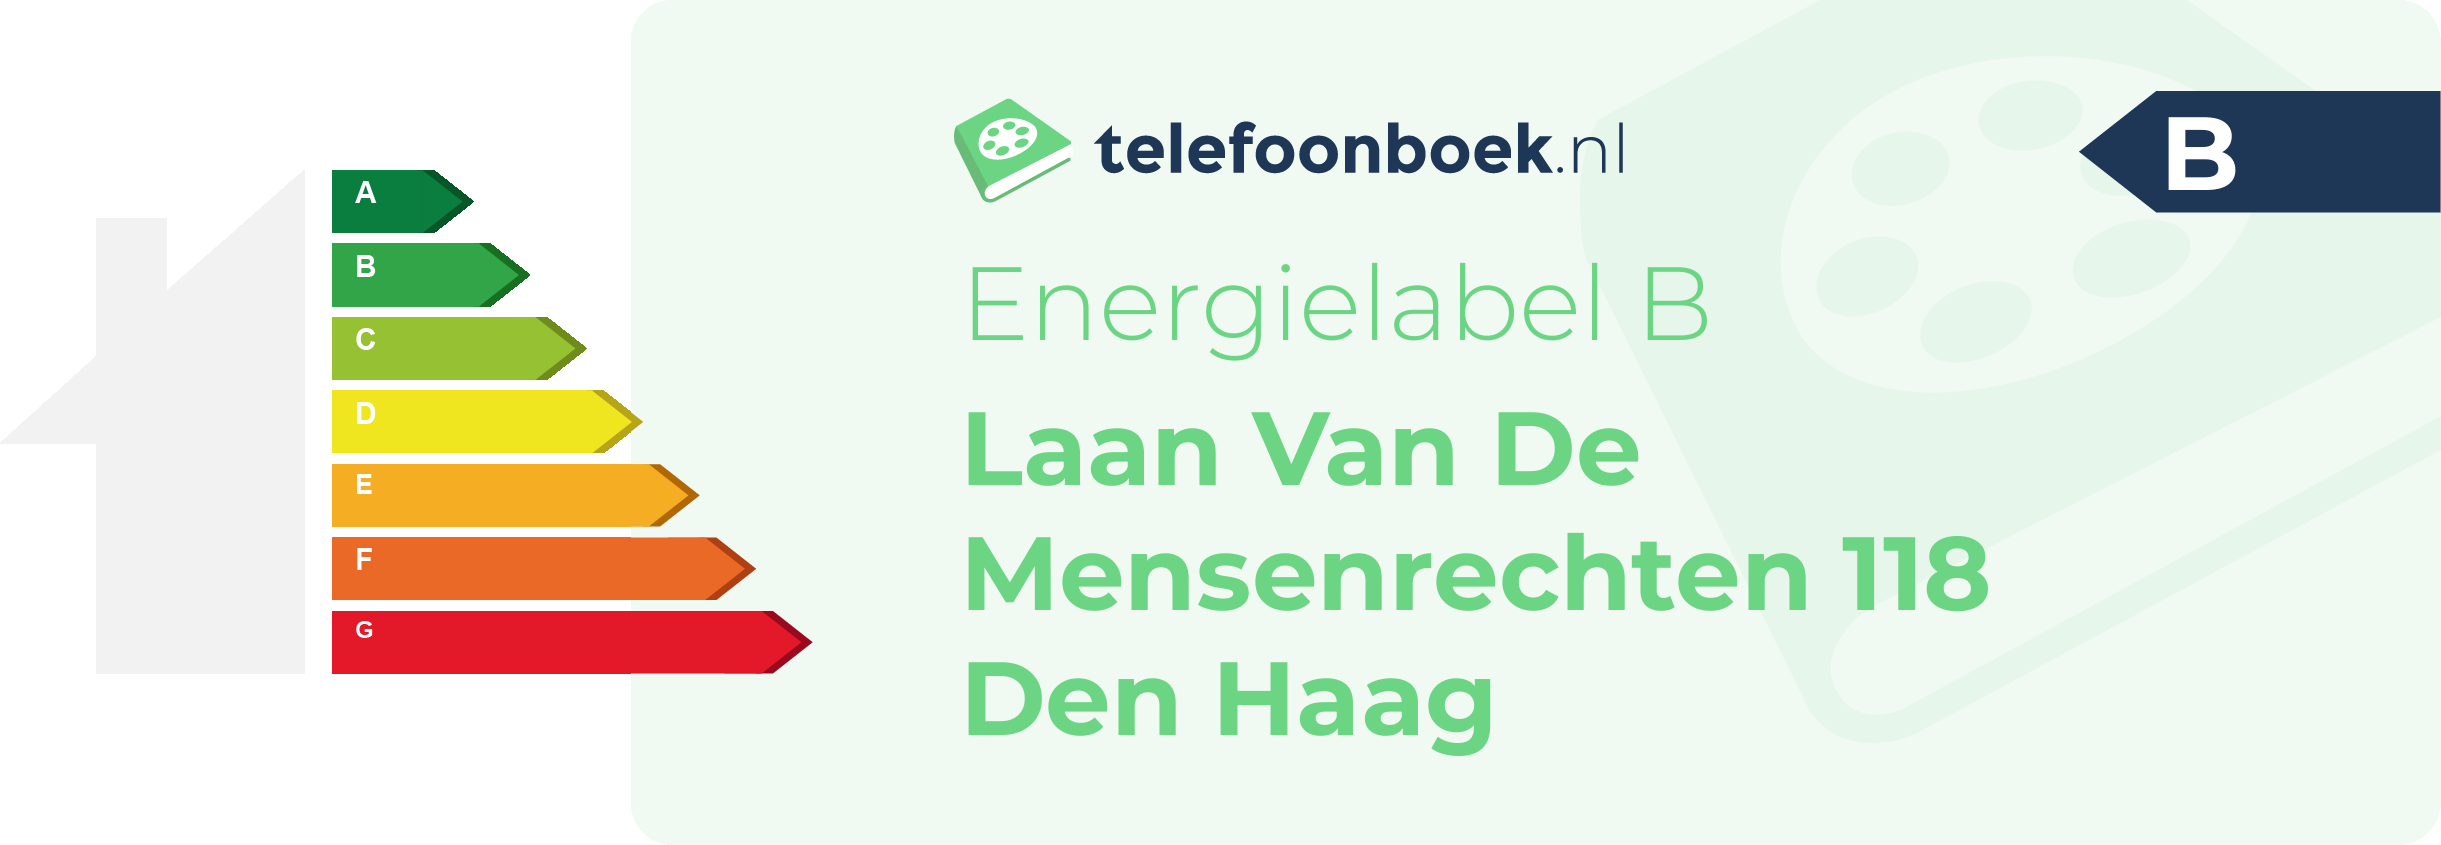 Energielabel Laan Van De Mensenrechten 118 Den Haag